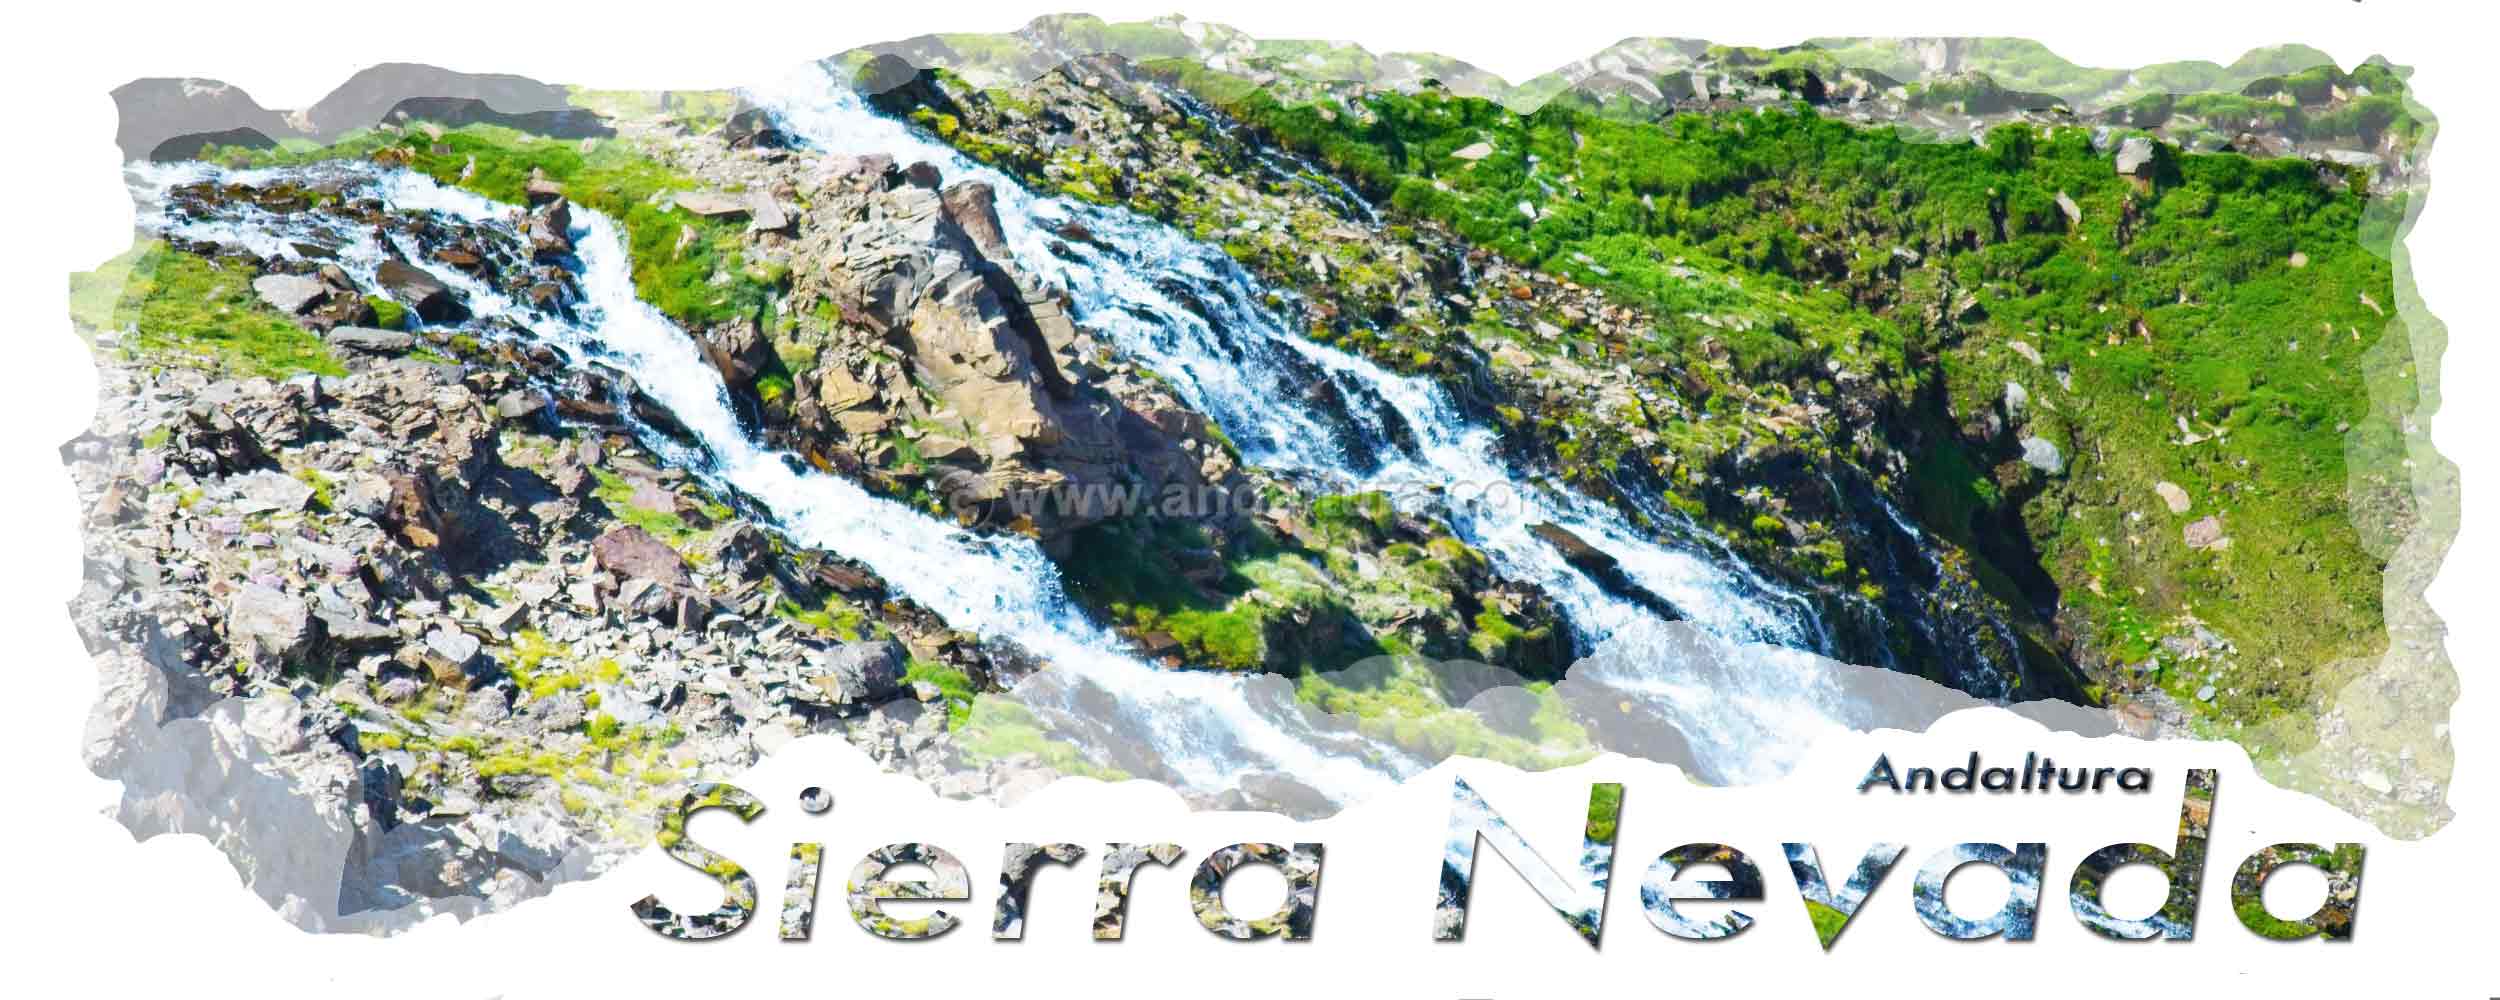 Cabecera de las Panorámica en invierno de Sierra Nevada desde el Veleta - Chorreras Negras desagüe de Laguna Hondera - Siete Lagunas